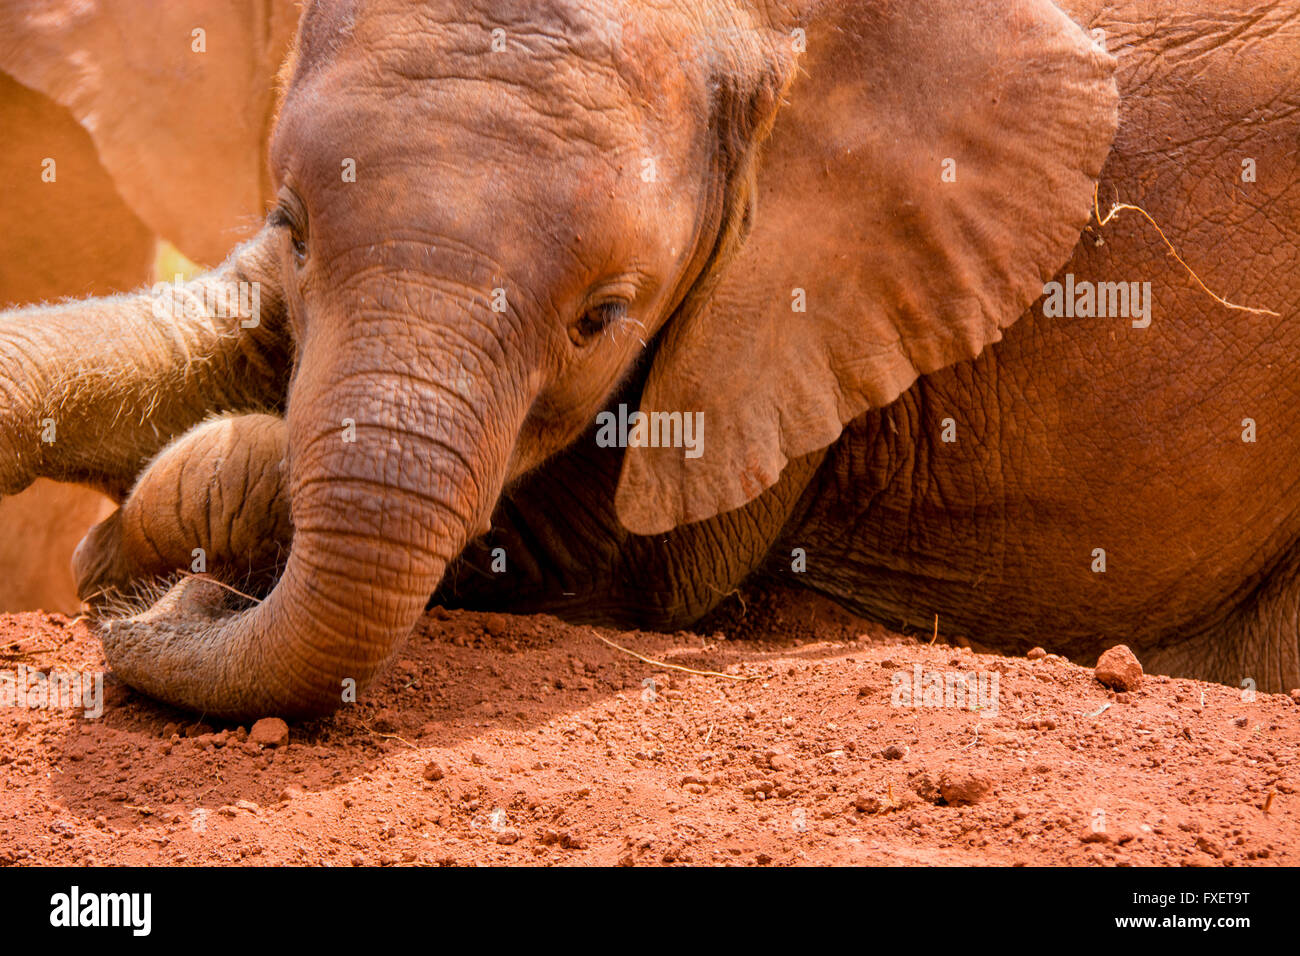 Lindo bebé elefante huérfano, Loxodonta africana, tomando un baño de polvo en el Orfanato de Elefantes Sheldrick, Nairobi, Kenya, Africa. Foto de stock